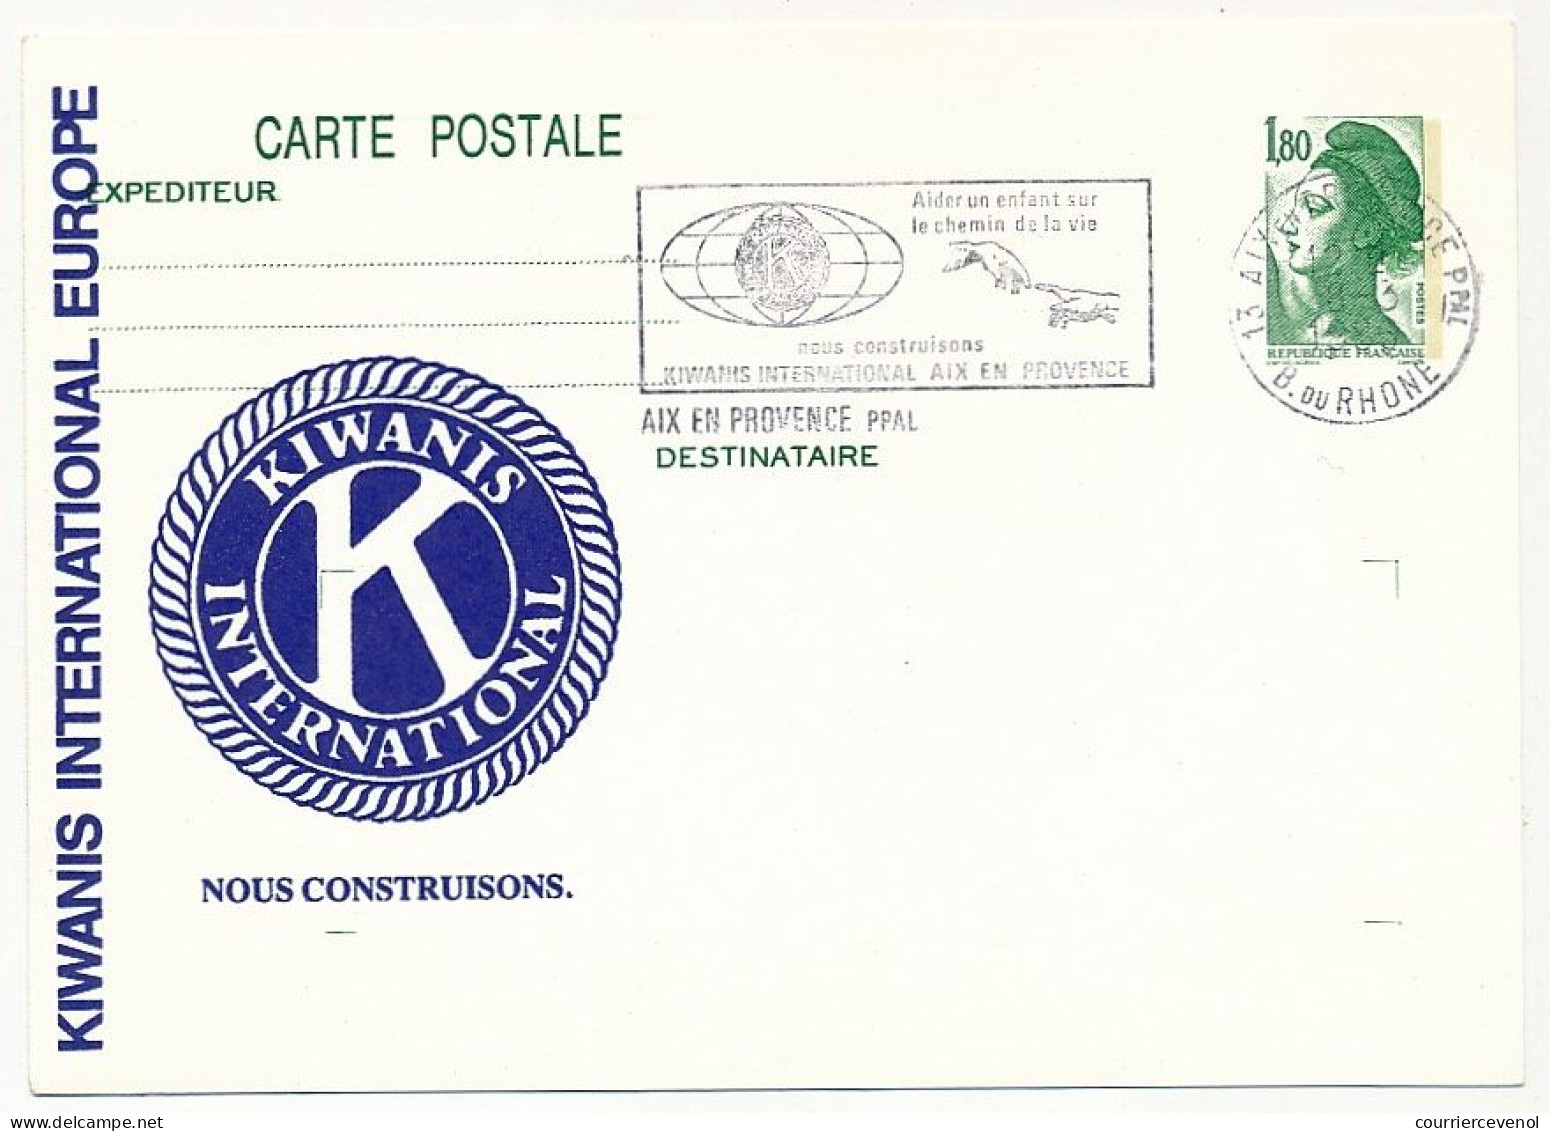 Entier Repiqué - C.P. 1,80 Liberté - KIWANIS INTERNATIONAL EUROPE Omec Idem Aix En Provence 18/3/1986 - Bijgewerkte Postkaarten  (voor 1995)